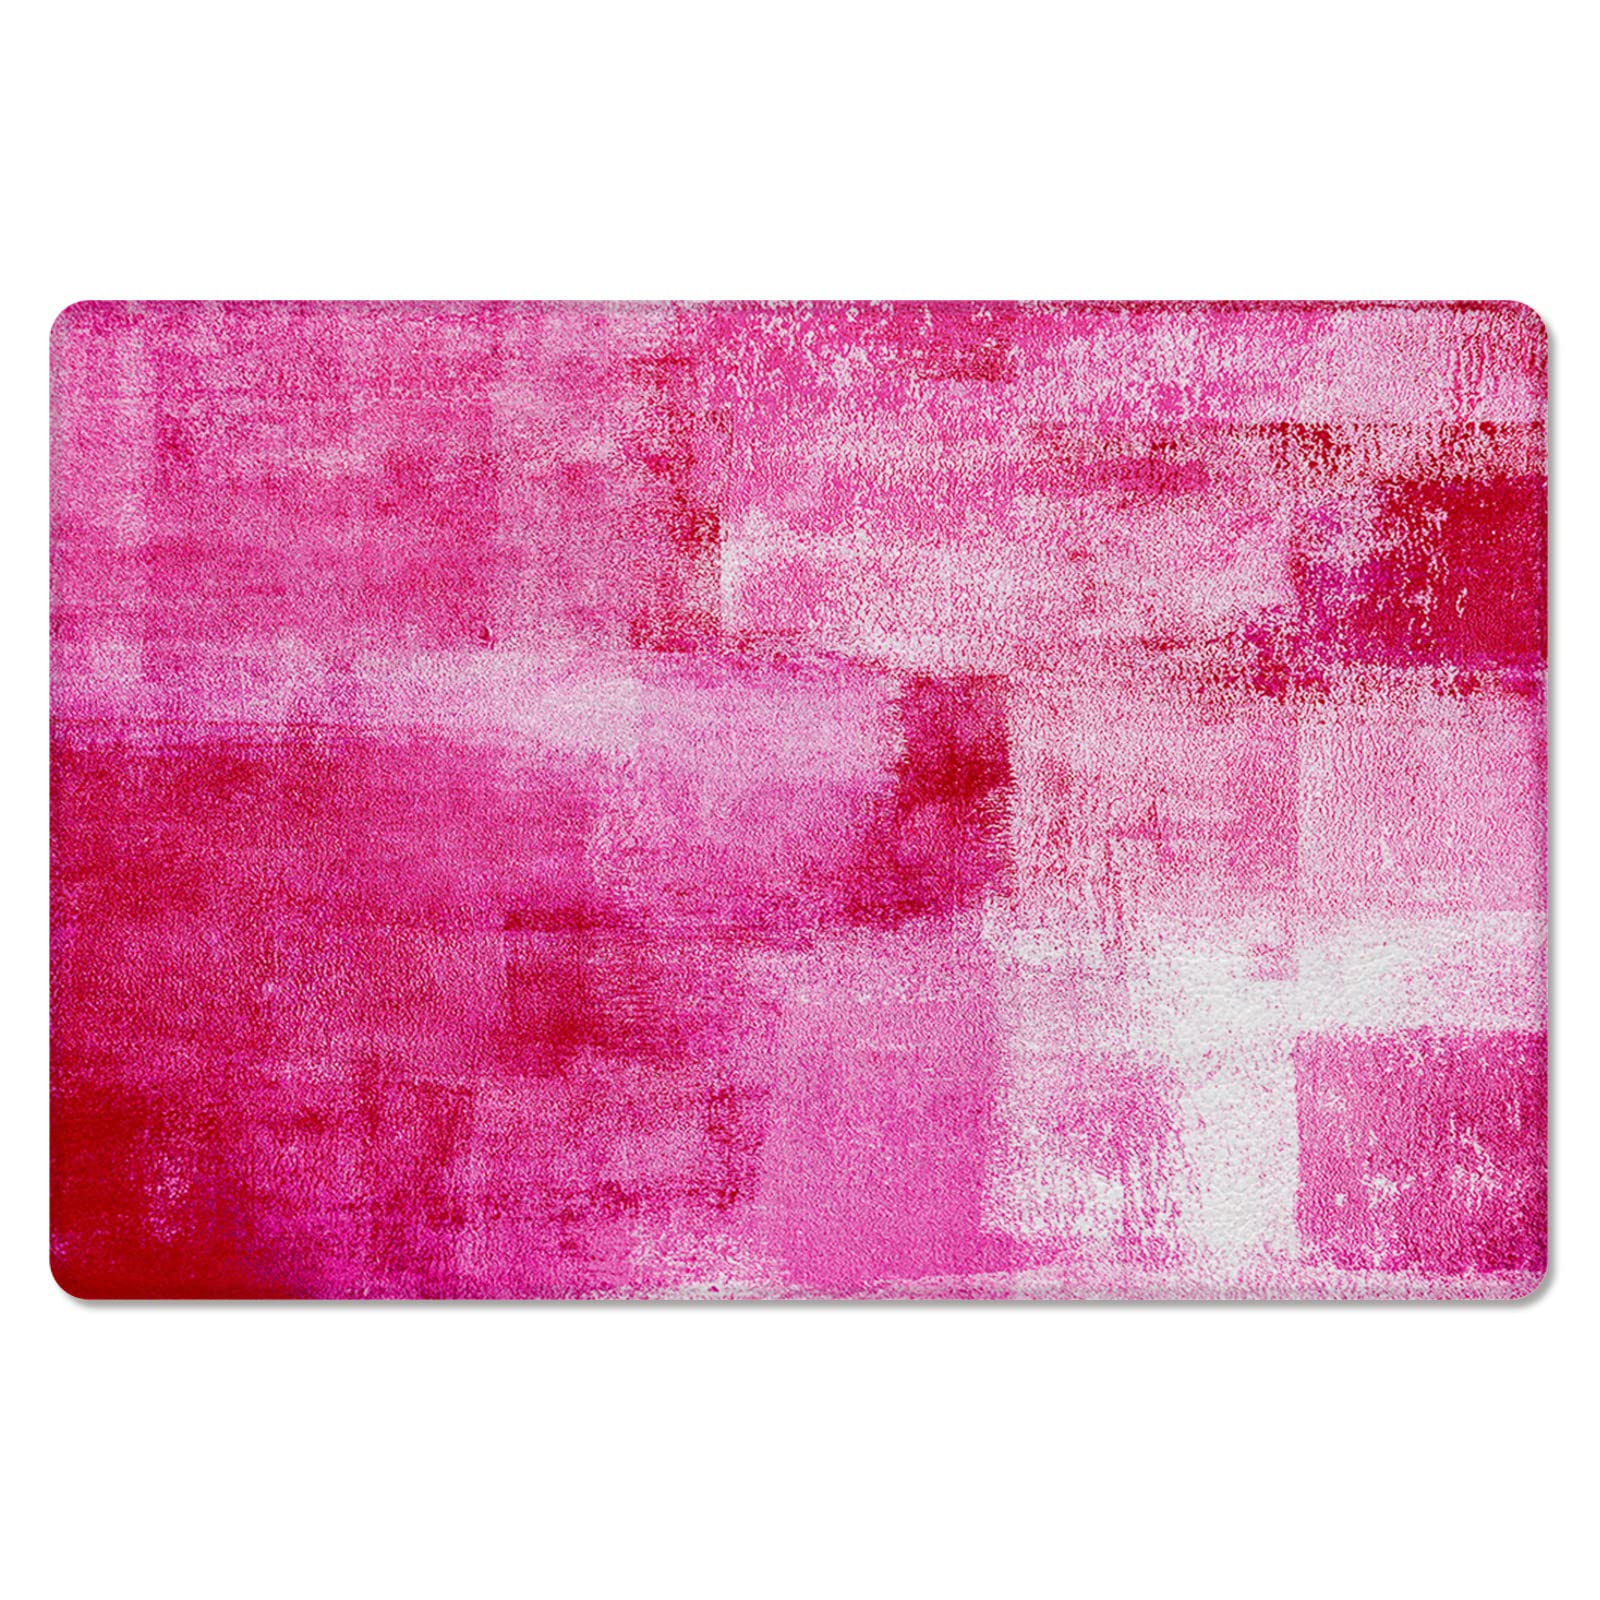 Abstract Pink Antifatigue Kitchen Bath Door Mat Cushioned Runner Rug,Washable Welcome Floor Sink Mat,Modern Minimalist Painting Aesthetics Waterproof Comfort Standing Doormat for Kitchen,24"x36"